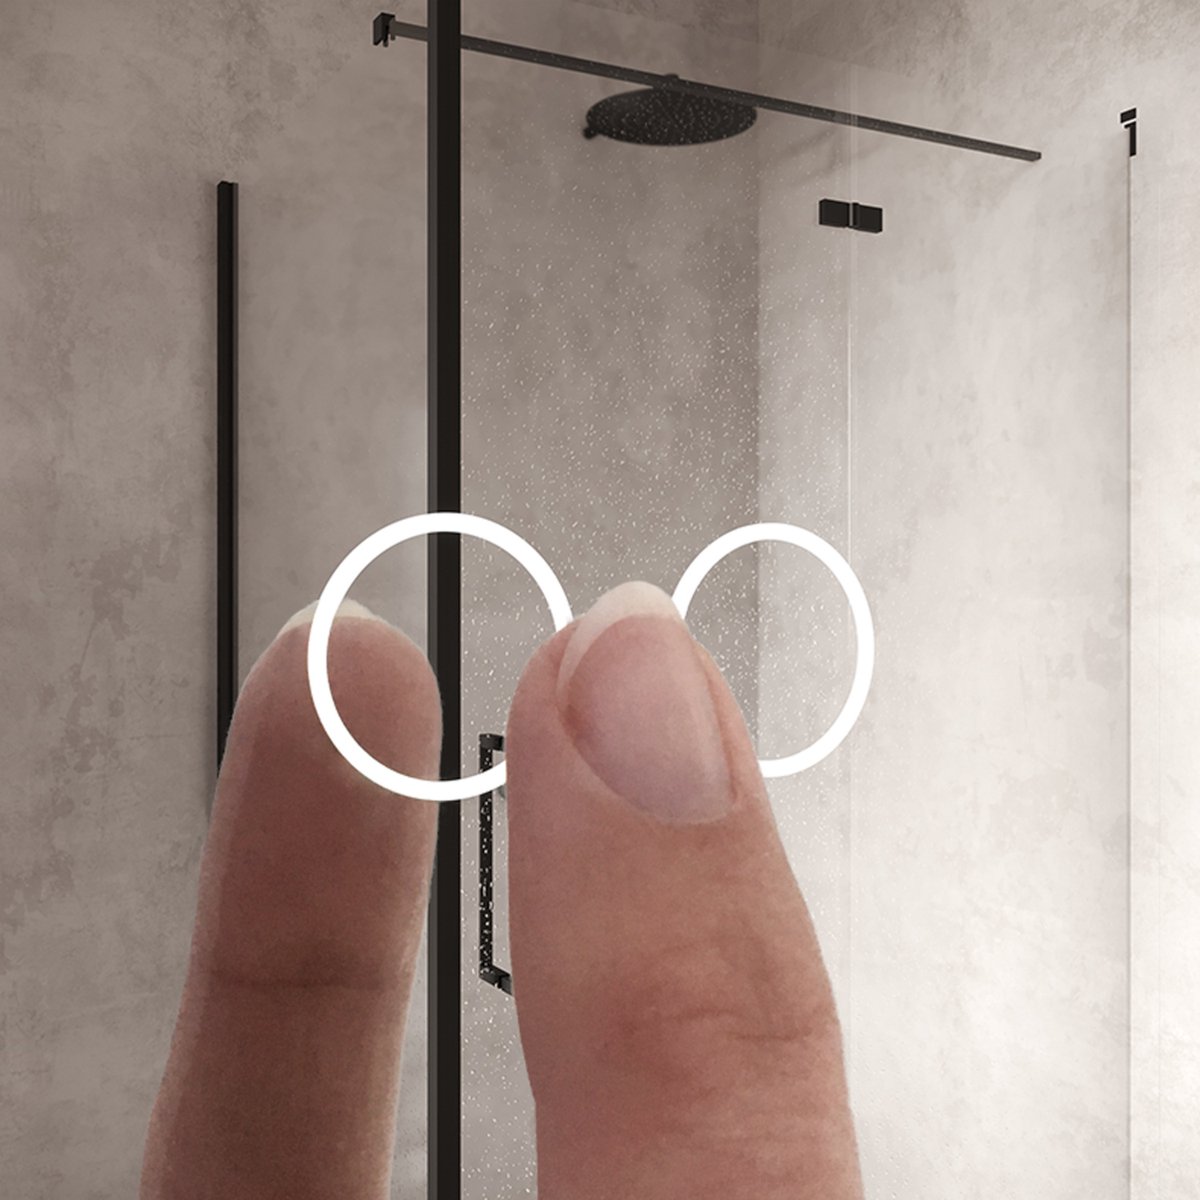 Ovalen badkamerspiegel met LED verlichting, verwarming, touch sensor en dimfunctie 100x70 cm